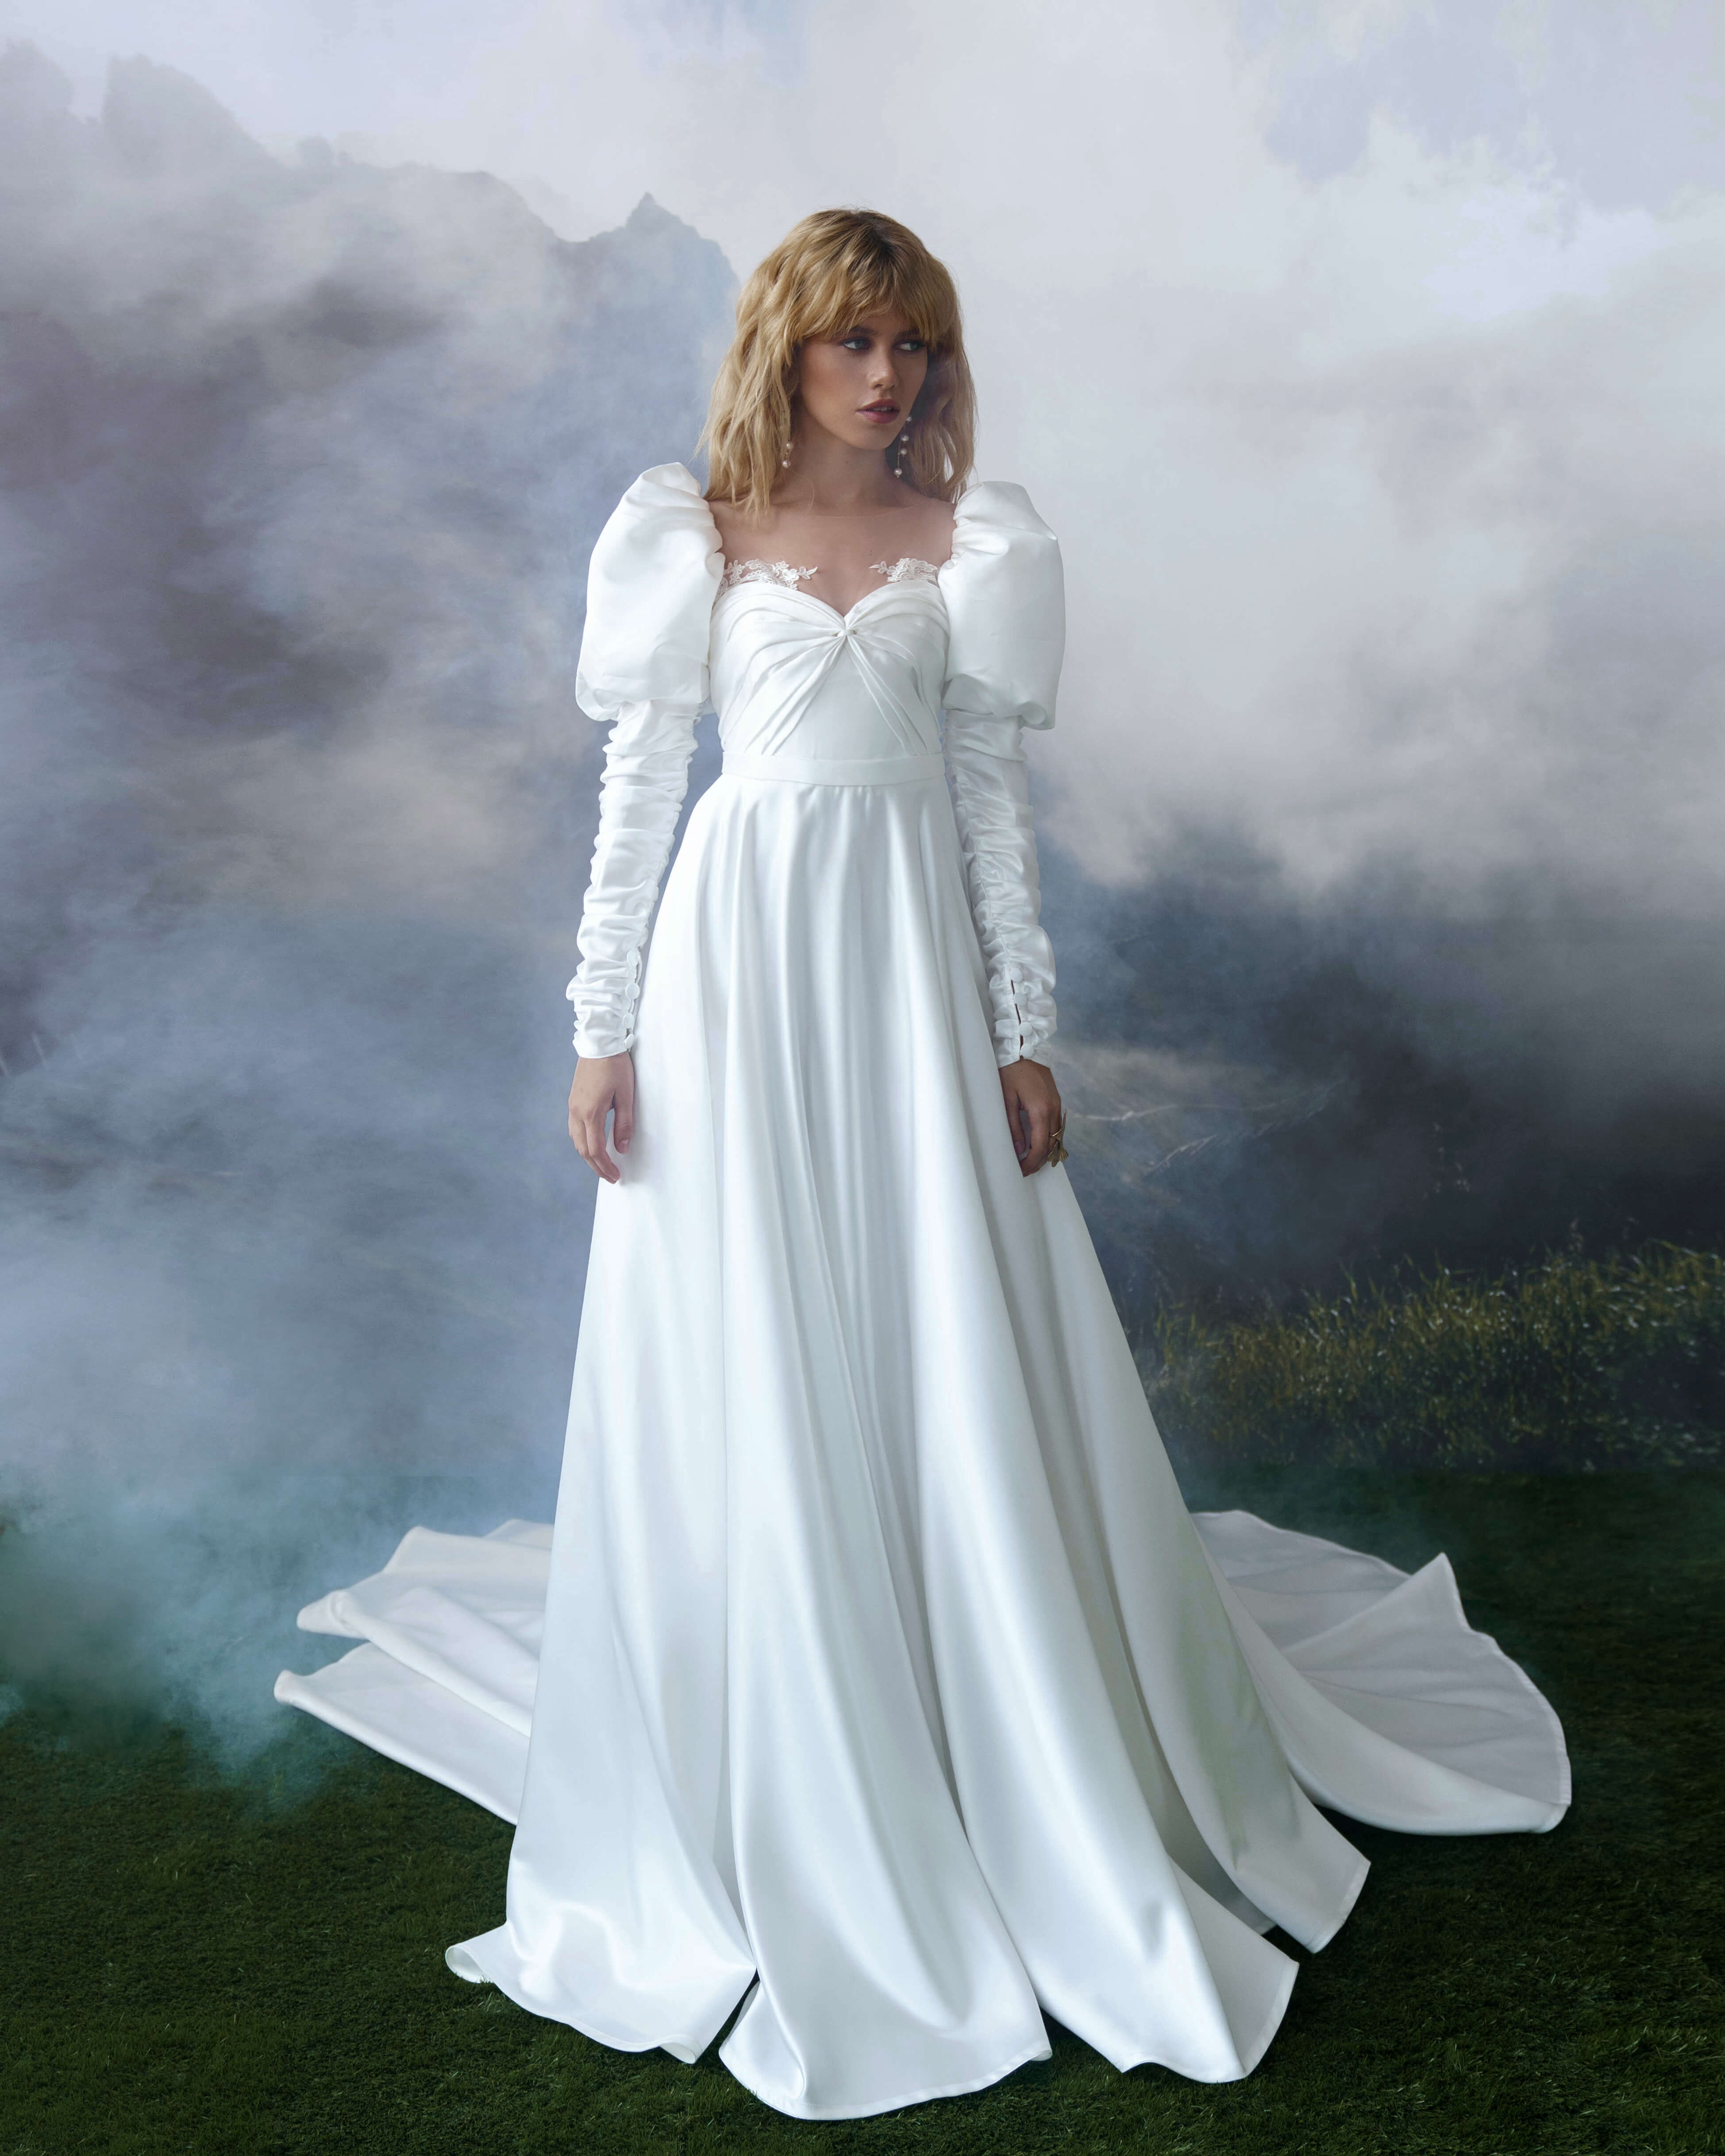 Купить свадебное платье «Клодин» Бламмо Биамо из коллекции Сказка 2022 года в салоне «Мэри Трюфель»